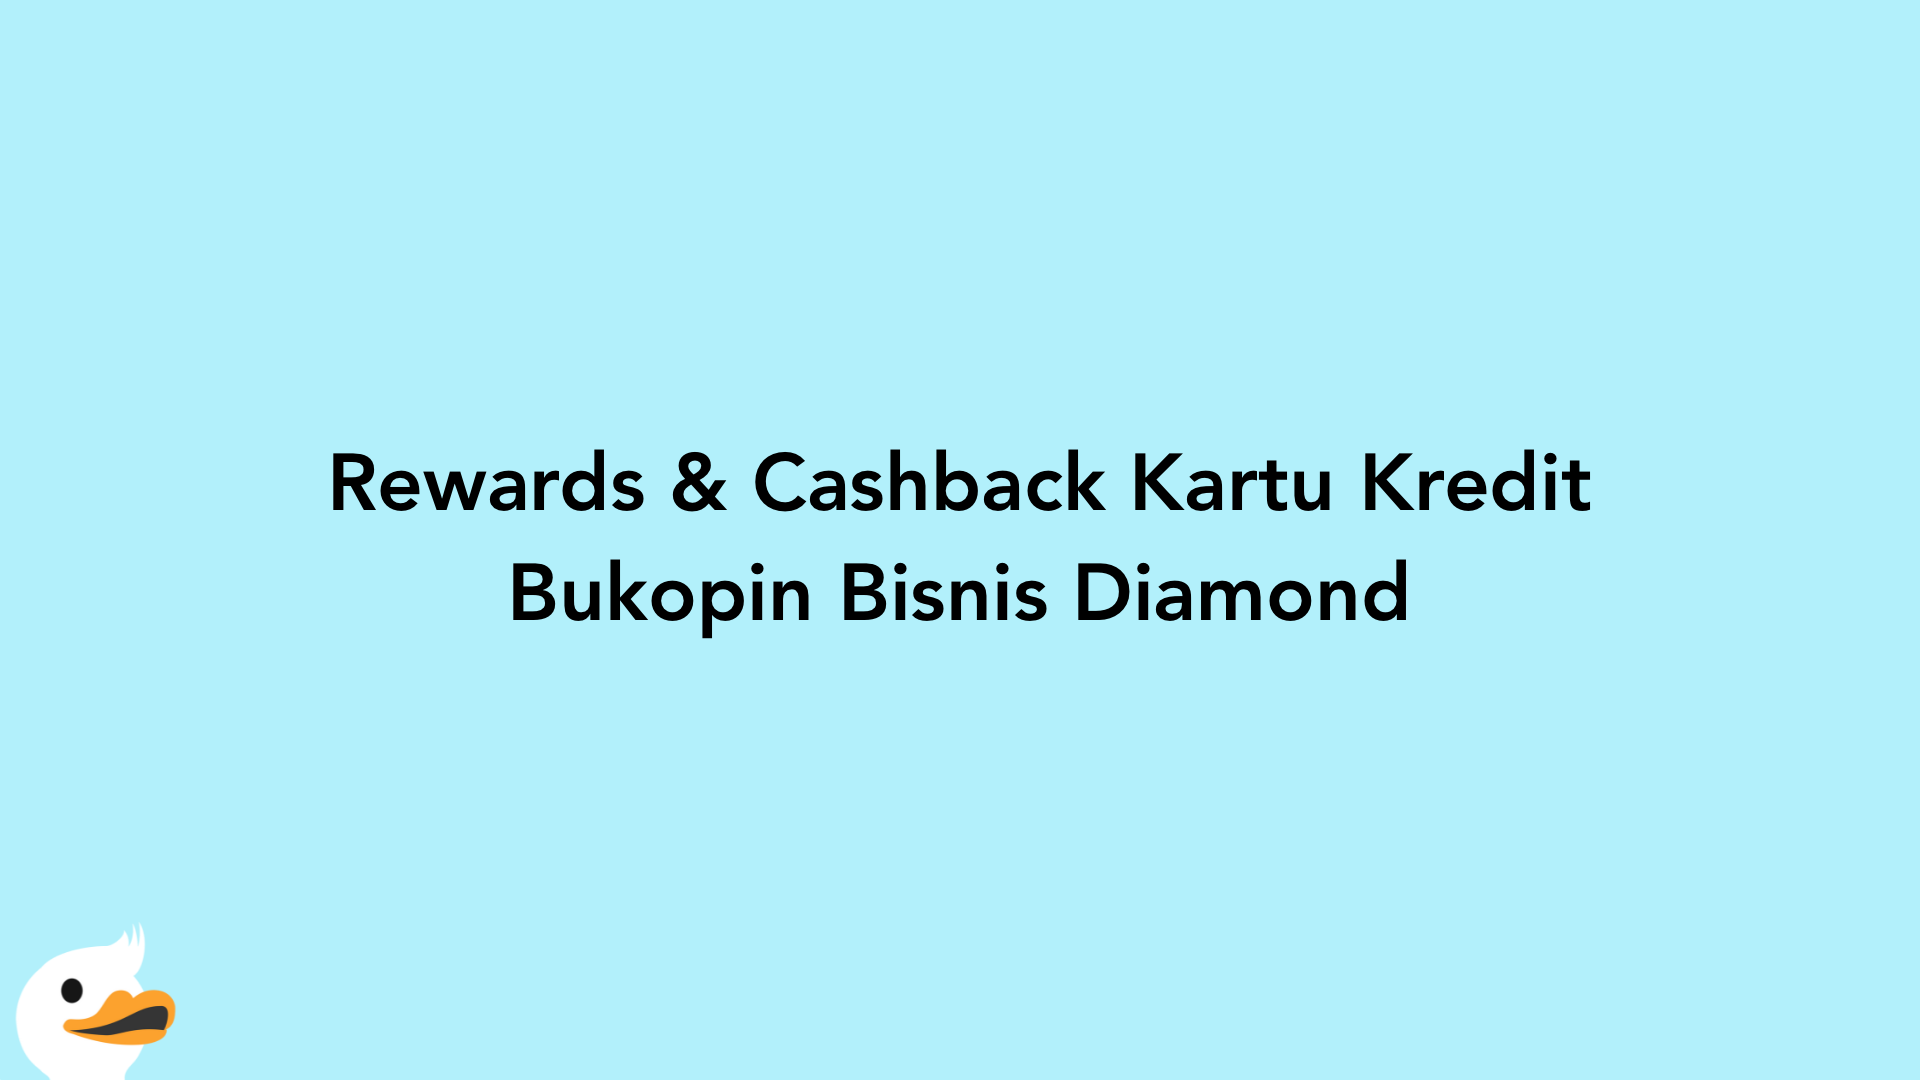 Rewards & Cashback Kartu Kredit Bukopin Bisnis Diamond